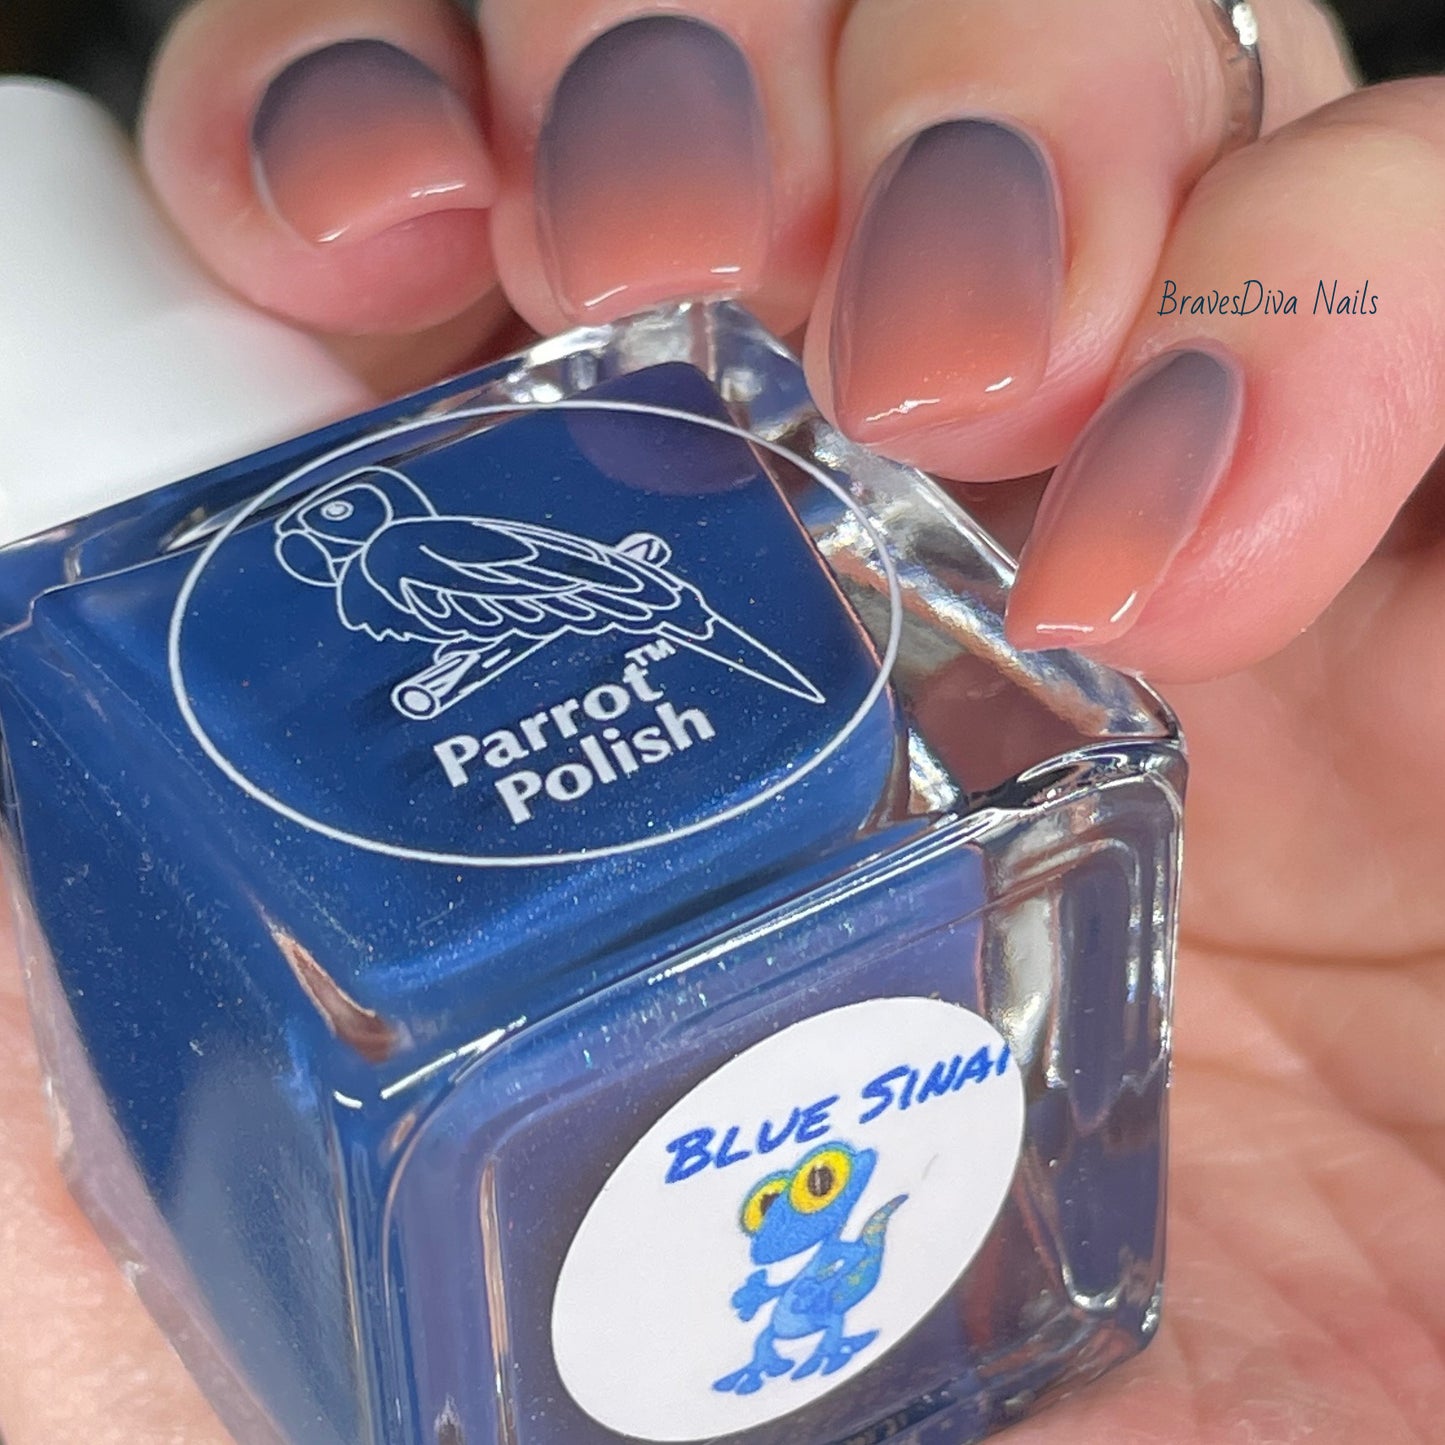 Parrot Polish Blue Sinai Thermal Nail Polish Blue/Tan